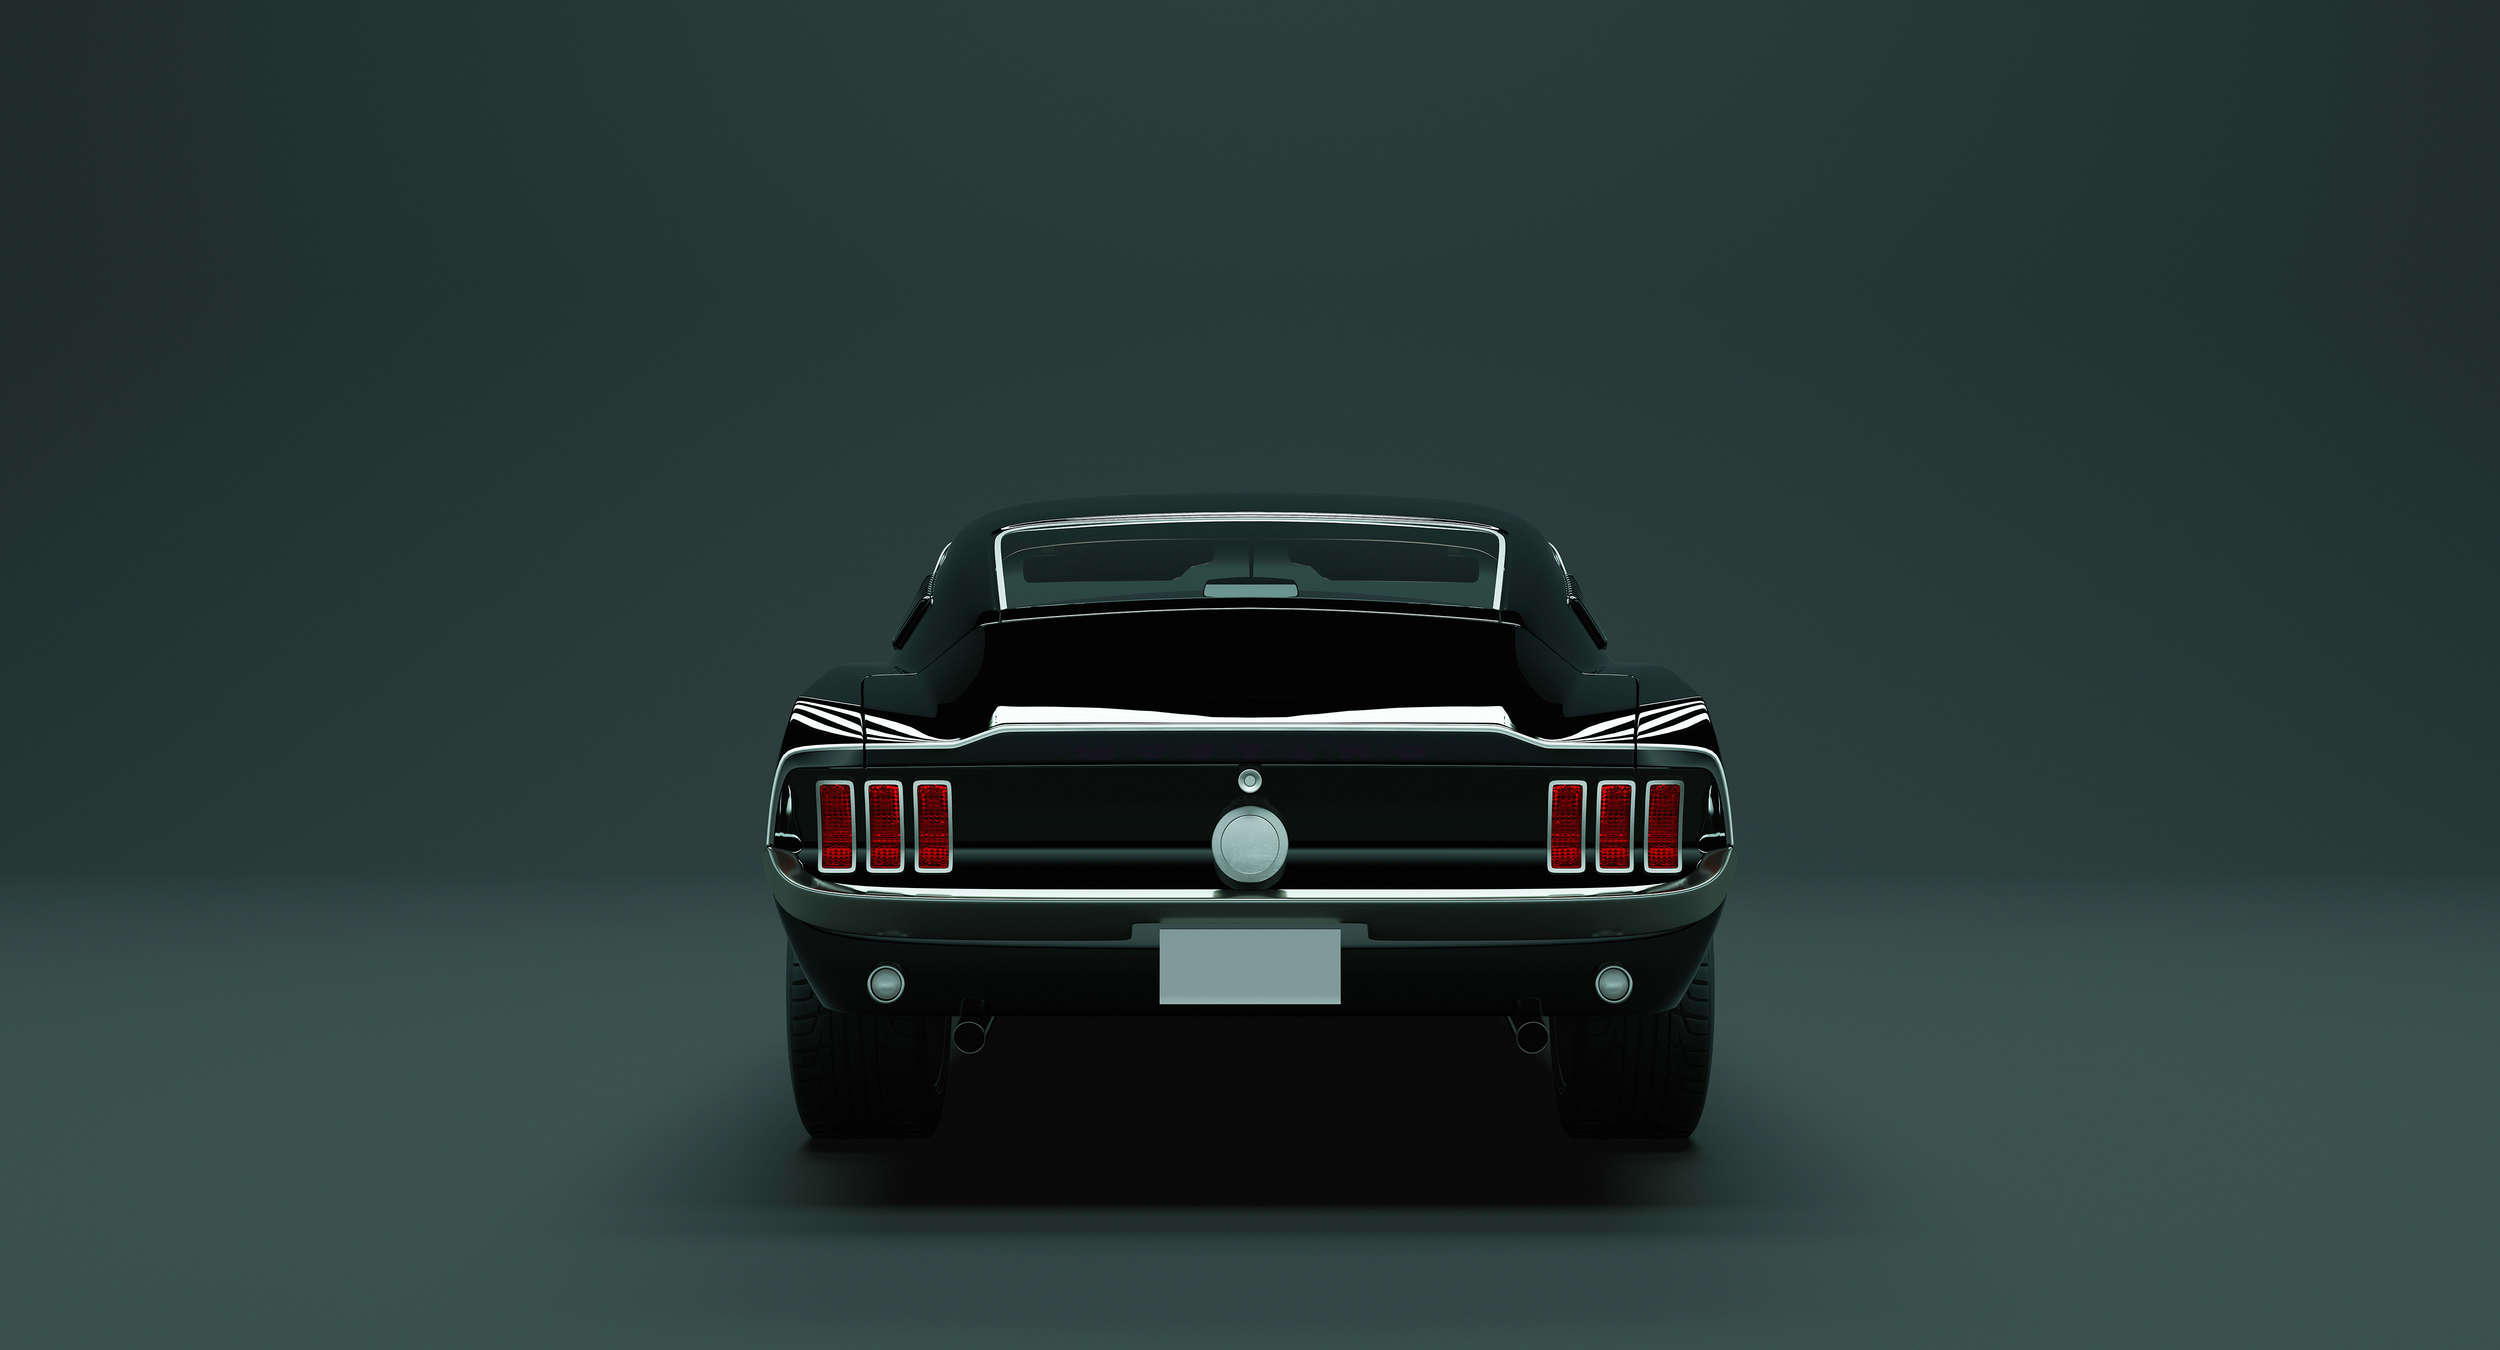             Mustang 3 - Carta da parati con auto sportive americane - Blu, nero | Materiali non tessuto testurizzato
        